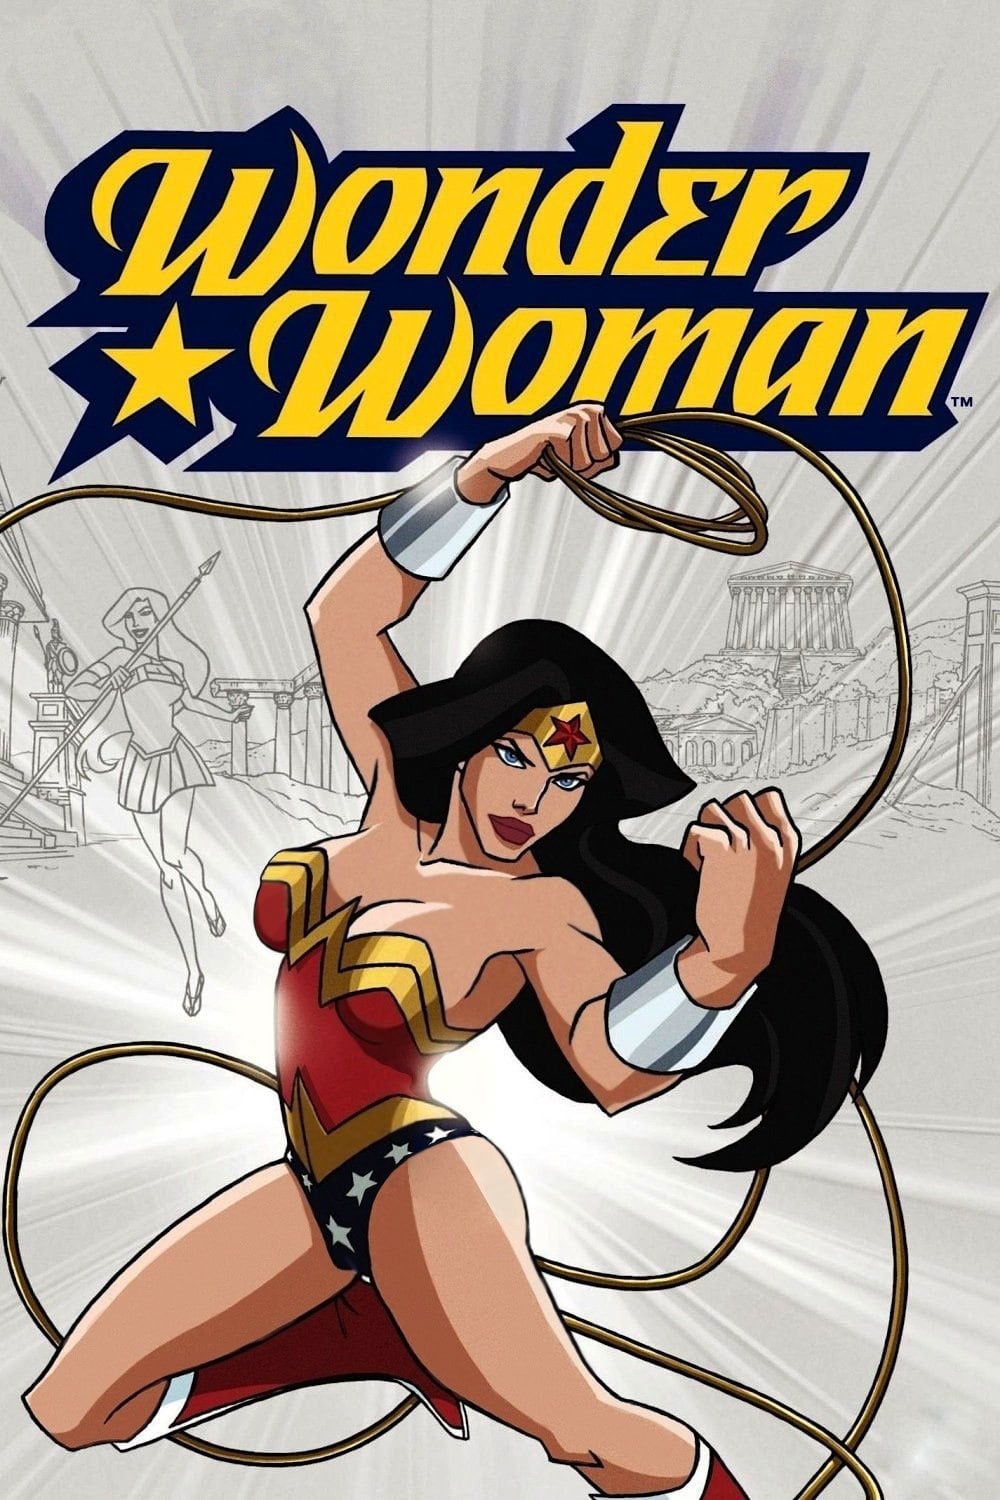 Công Chúa Biến Binh (Wonder Woman) [2009]